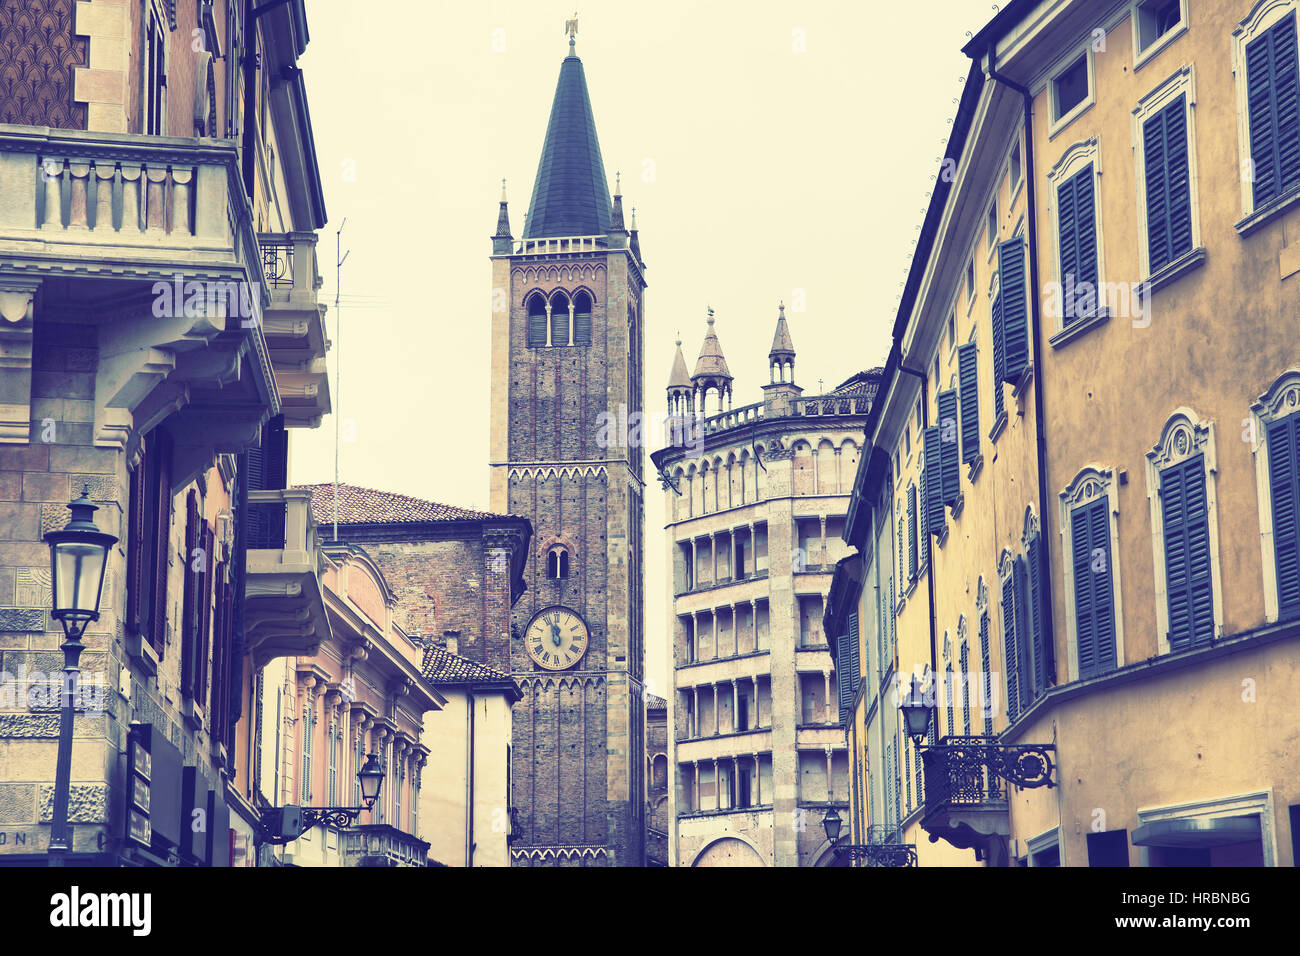 Dom und Baptisterium in Parma, Italien. Retro-Stil gefilterten Bild Stockfoto